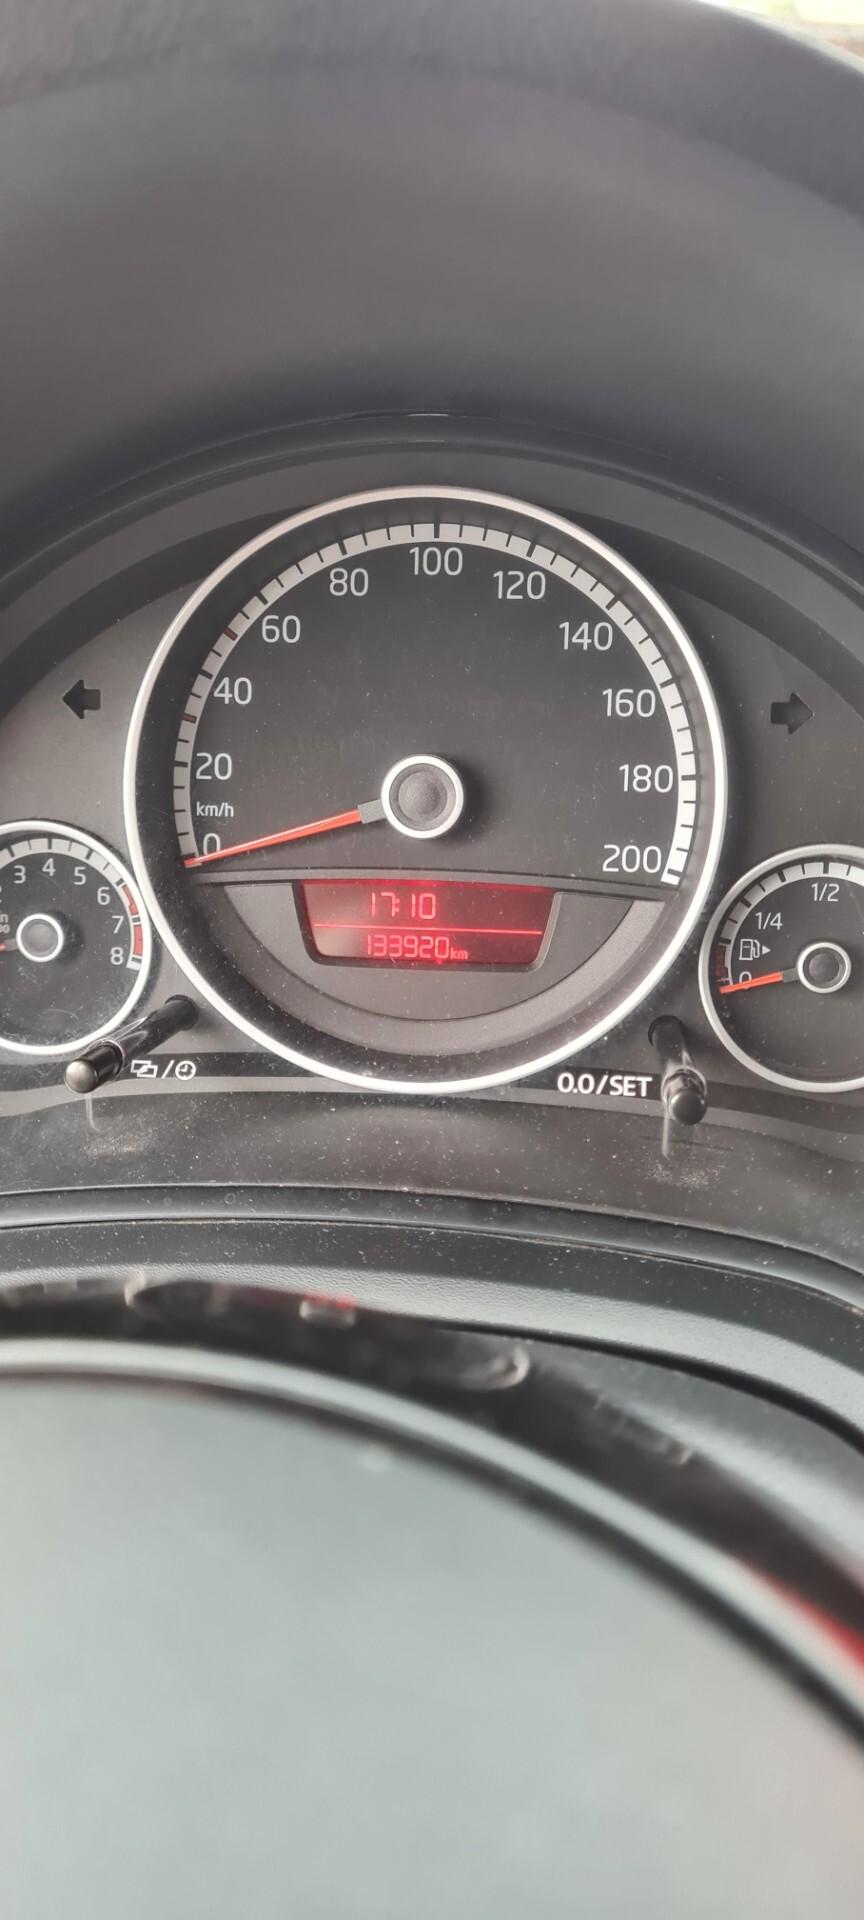 Volkswagen up! 1.0 75 CV 5p. 133.000km